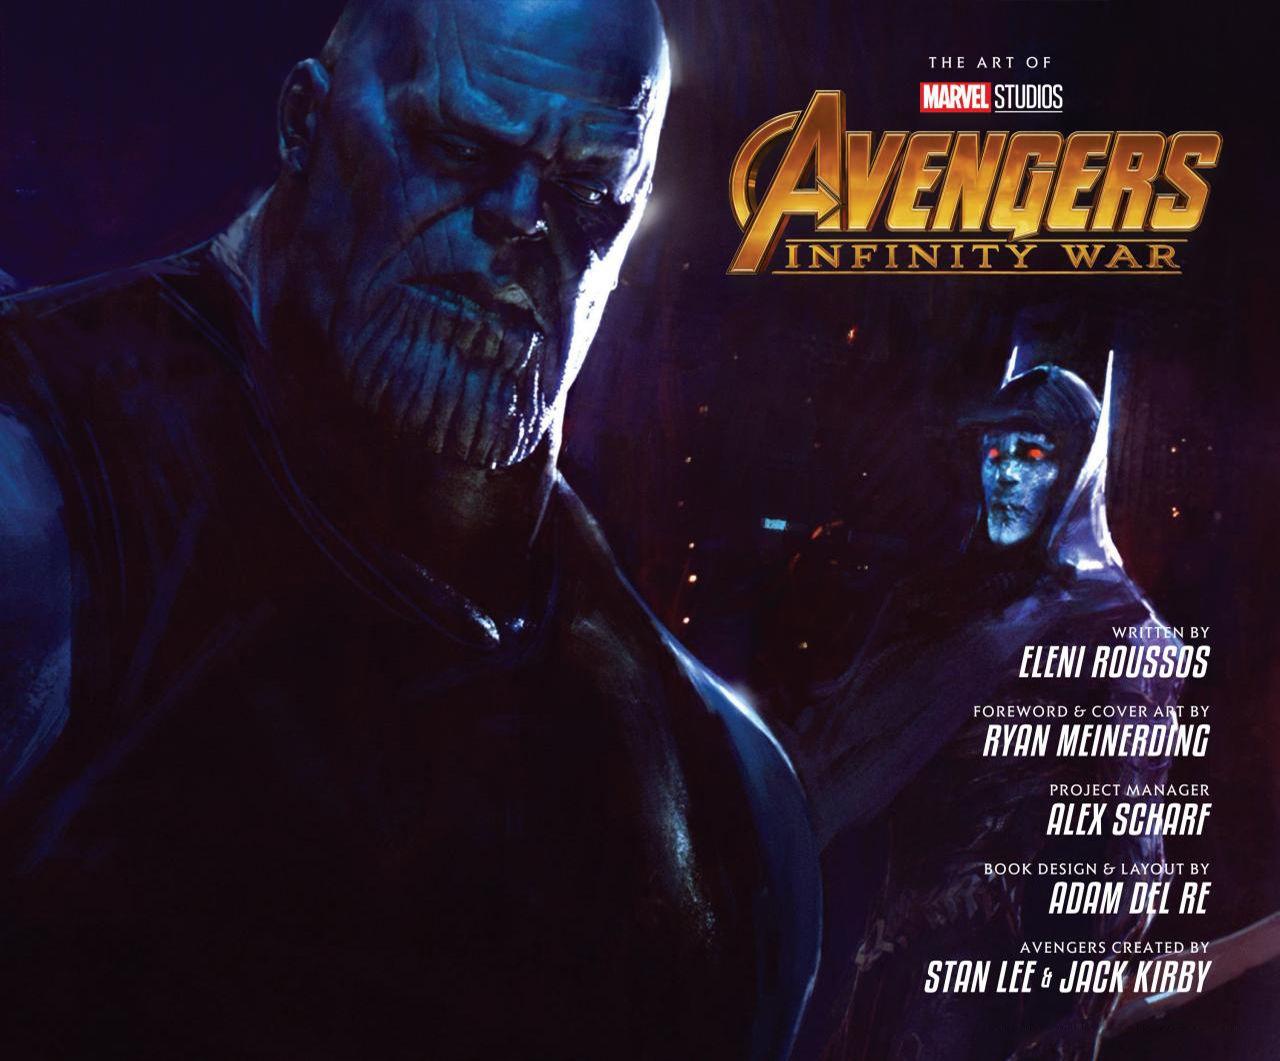 The Art of Marvel's Avengers Infinity War 5